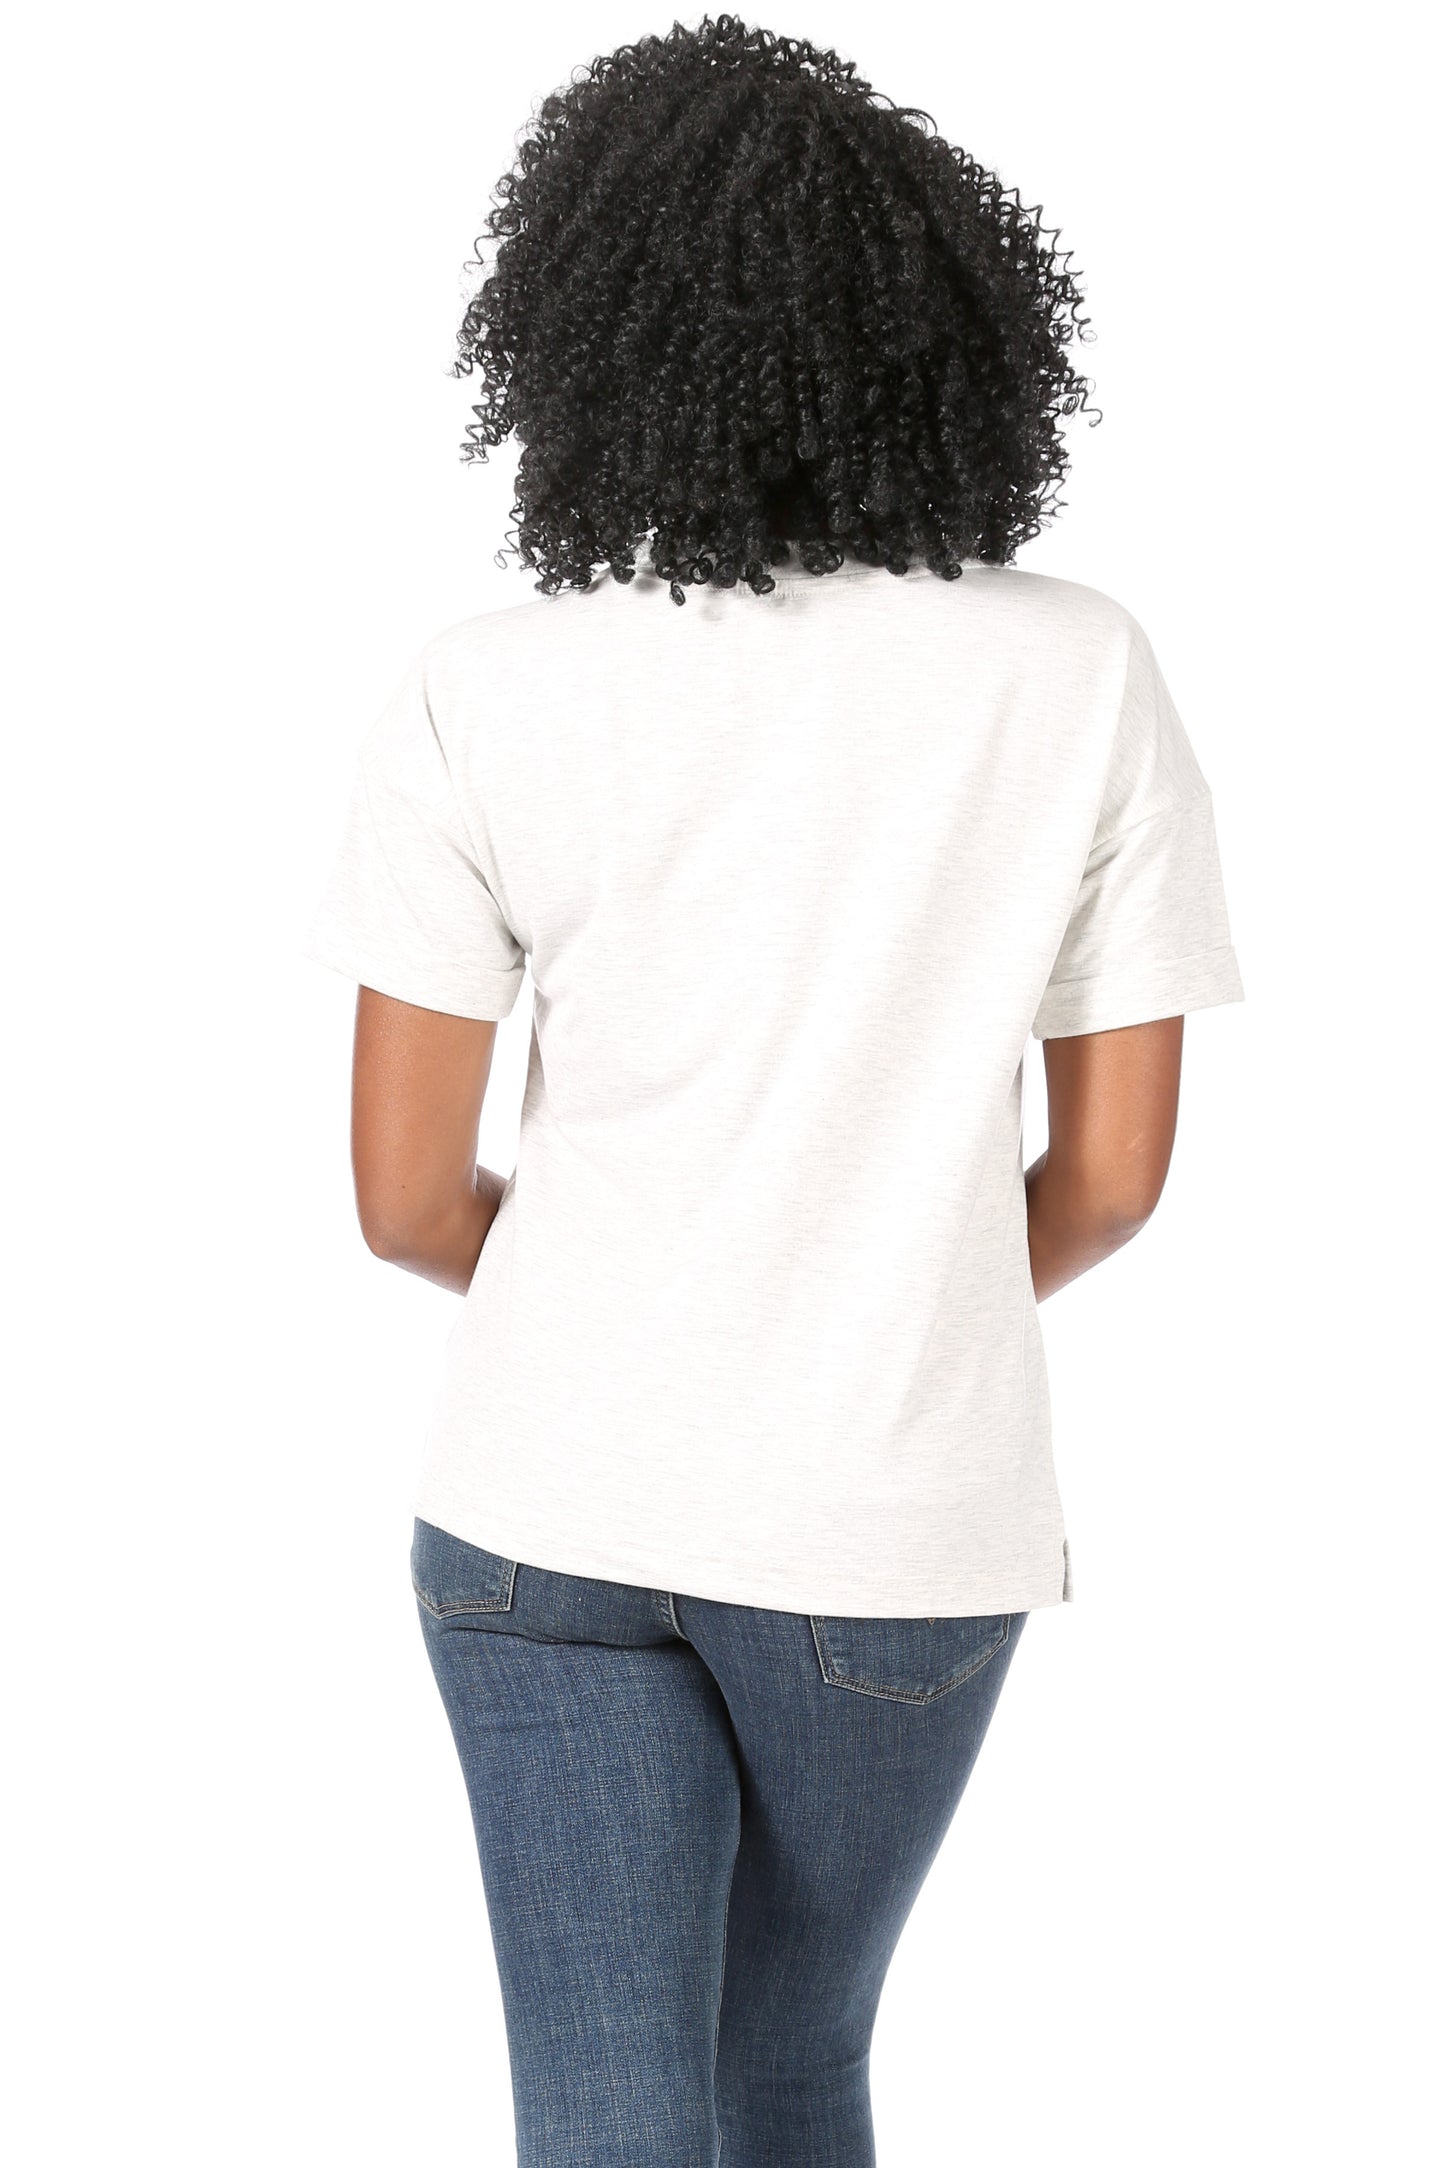 Women's "LOVE" Oversized Drop Sleeve T-Shirt - Rae Dunn Wear